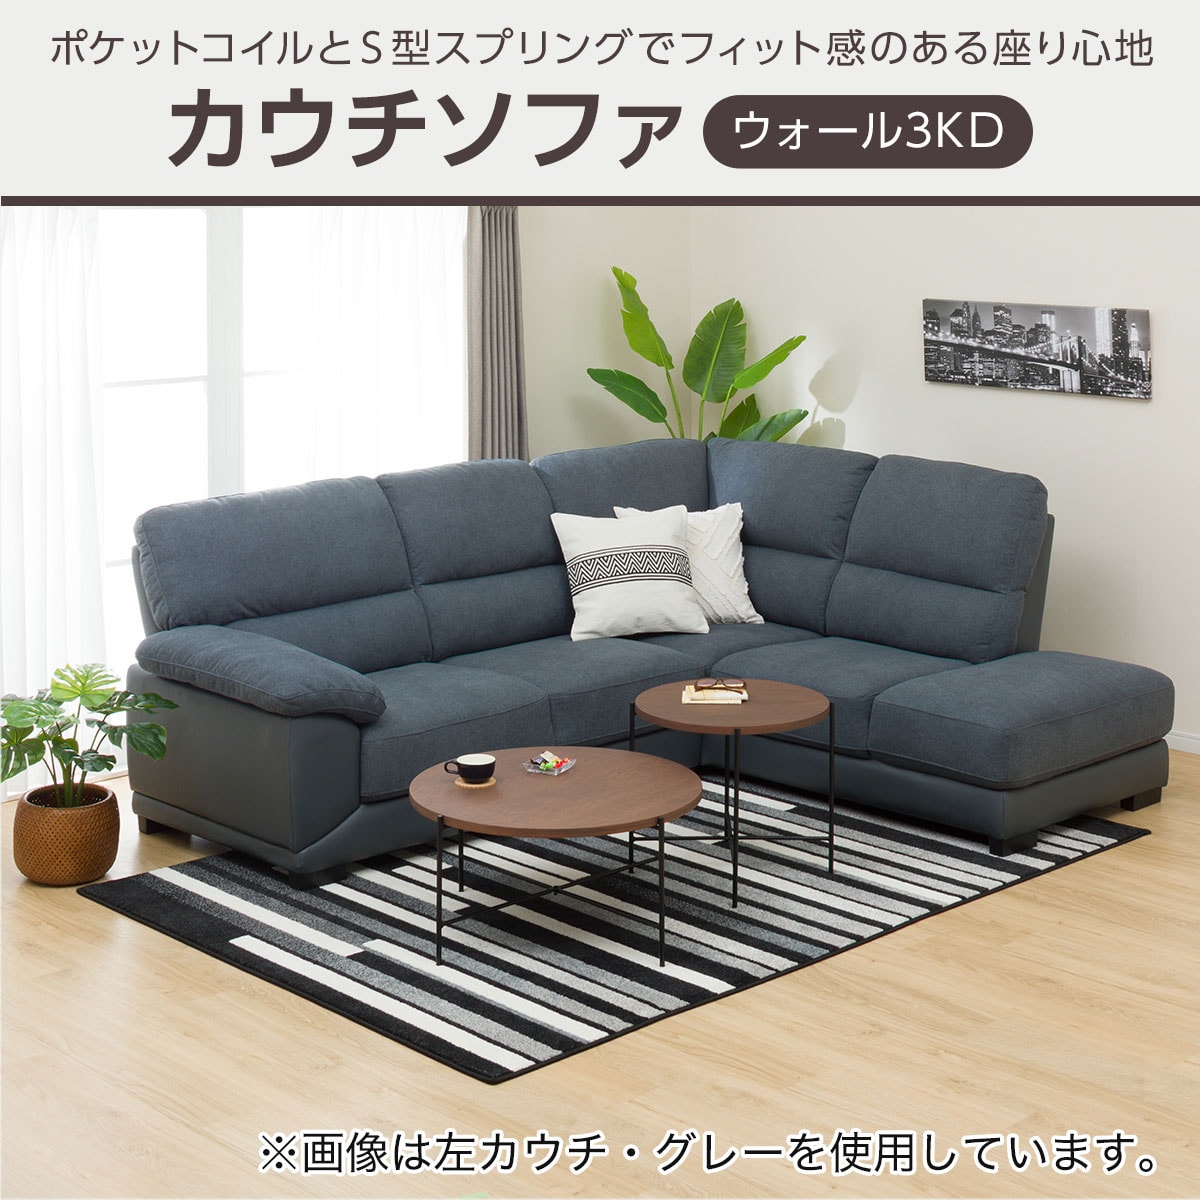 布張りカウチソファ(ウォール3KD)通販 | ニトリネット【公式】 家具 